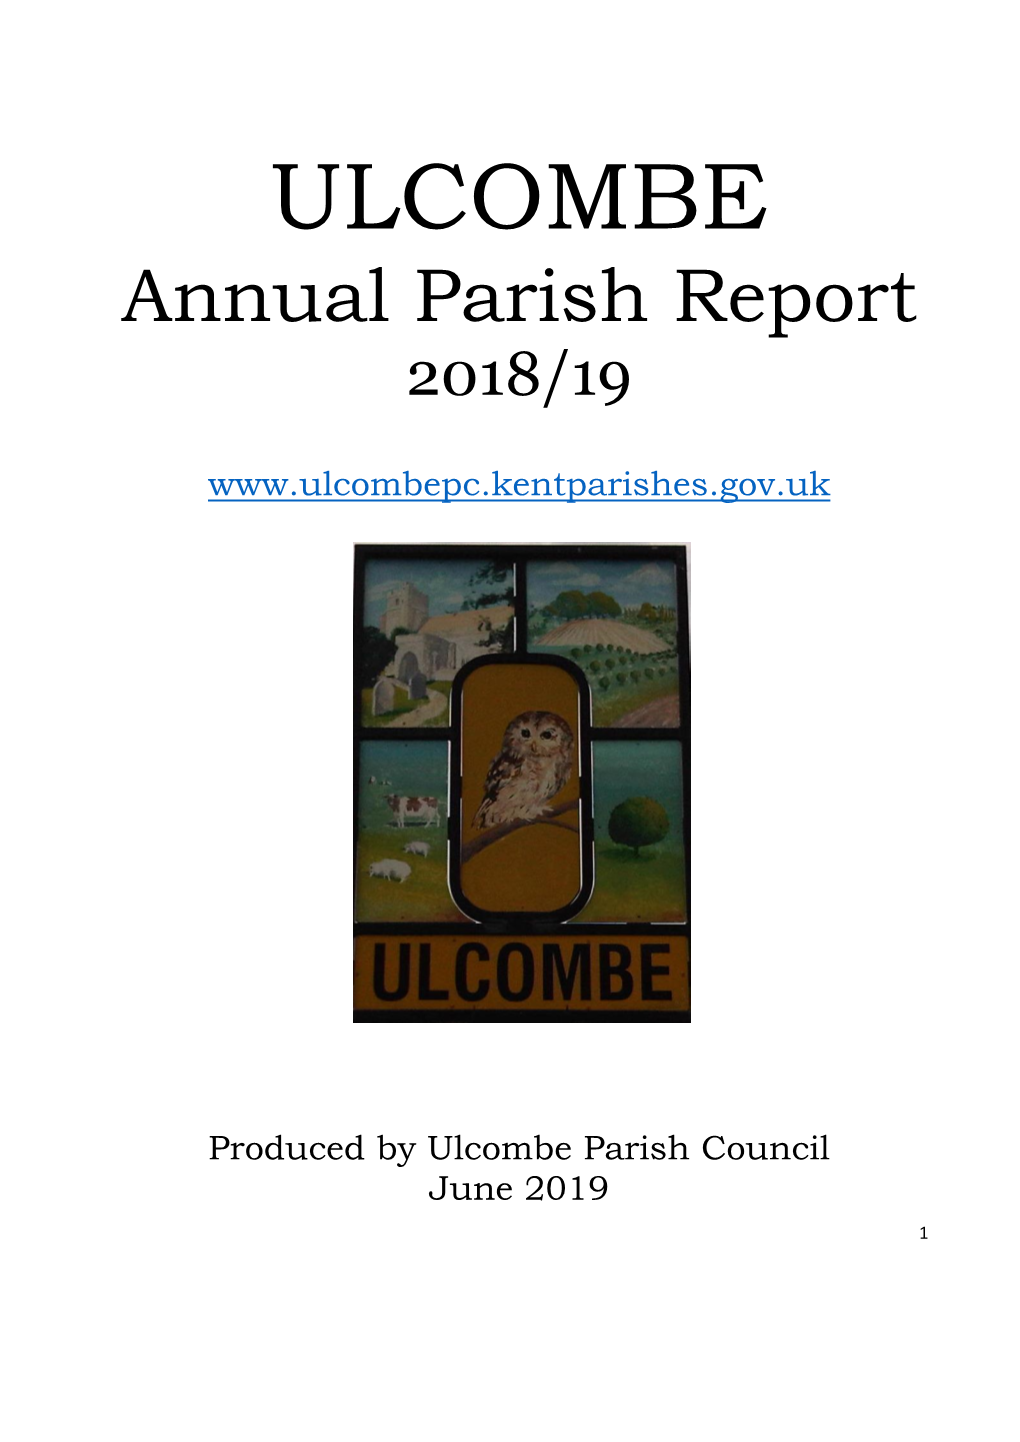 Annual Parish Report 2018/19